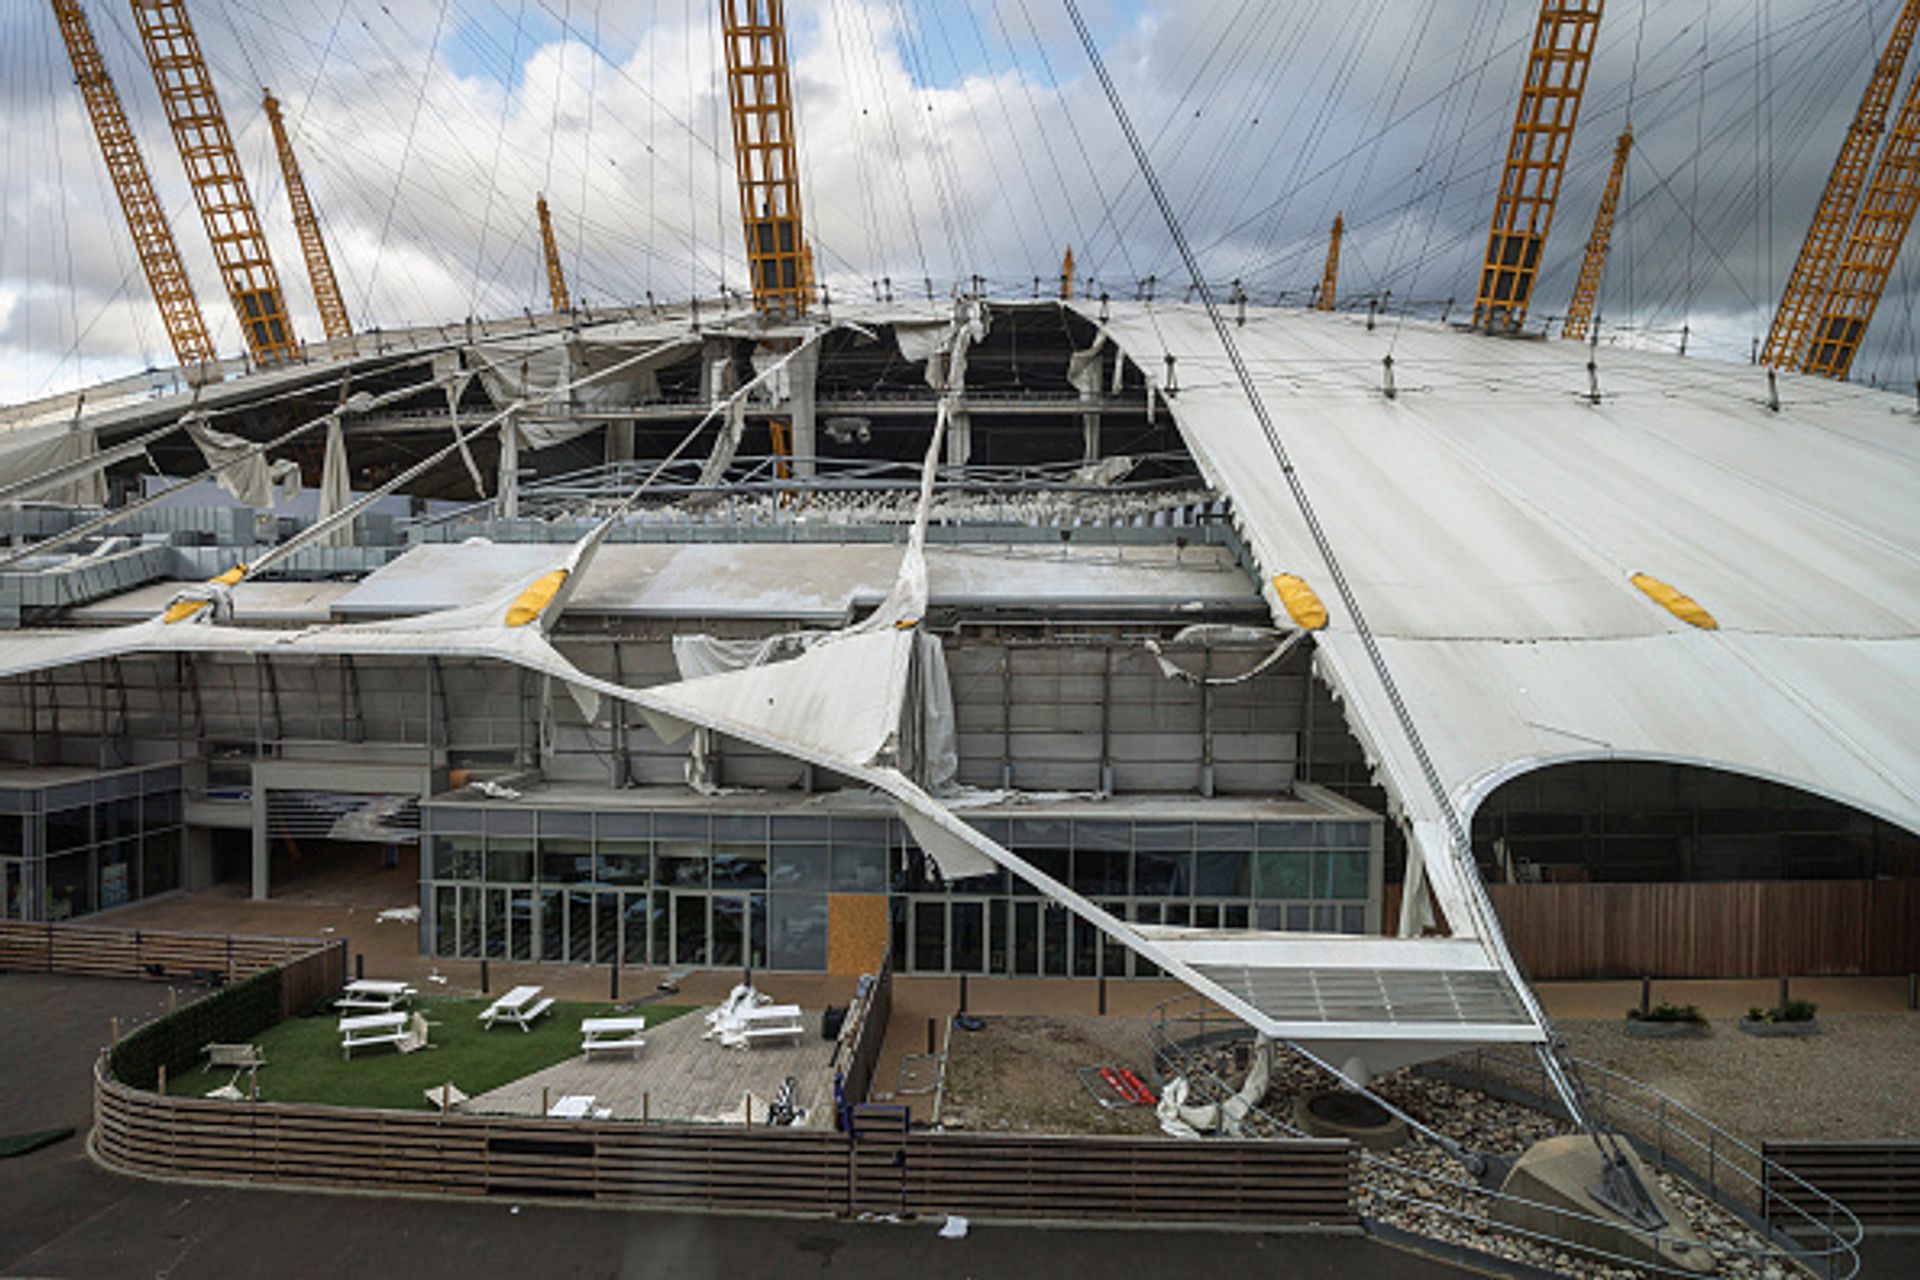 חלף עם הרוח: הסופה יוניס גרמה לנזק חמור לגג של ארנה O2 בלונדון

© תמונה מאת רוב פיני/Getty Images